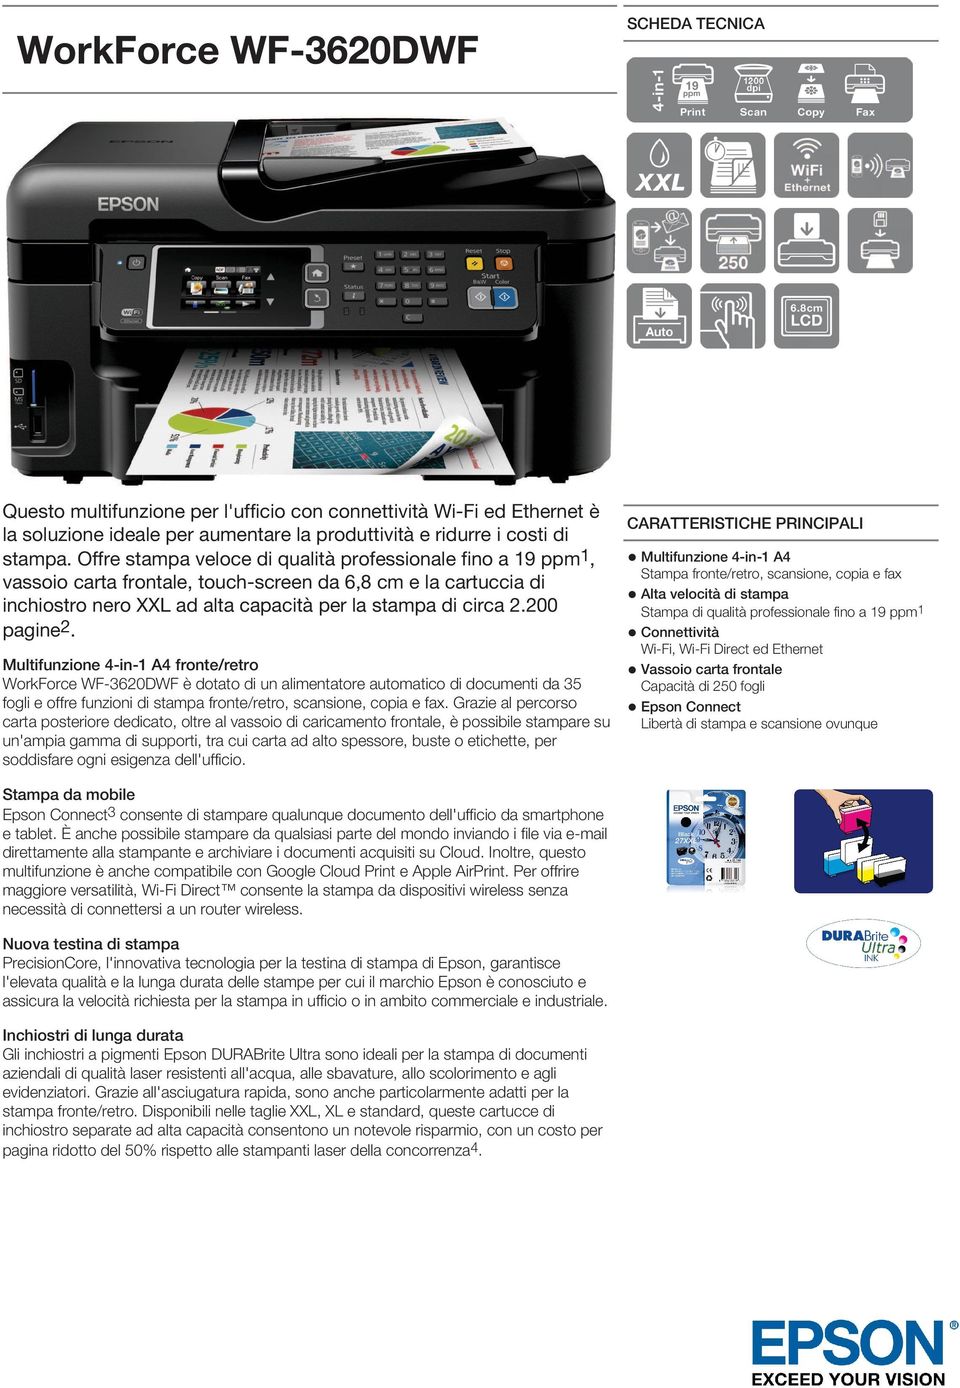 Multifunzione 4-in-1 A4 fronte/retro WorkForce WF-3620DWF è dotato di un alimentatore automatico di documenti da 35 fogli e offre funzioni di stampa fronte/retro, scansione, copia e fax.